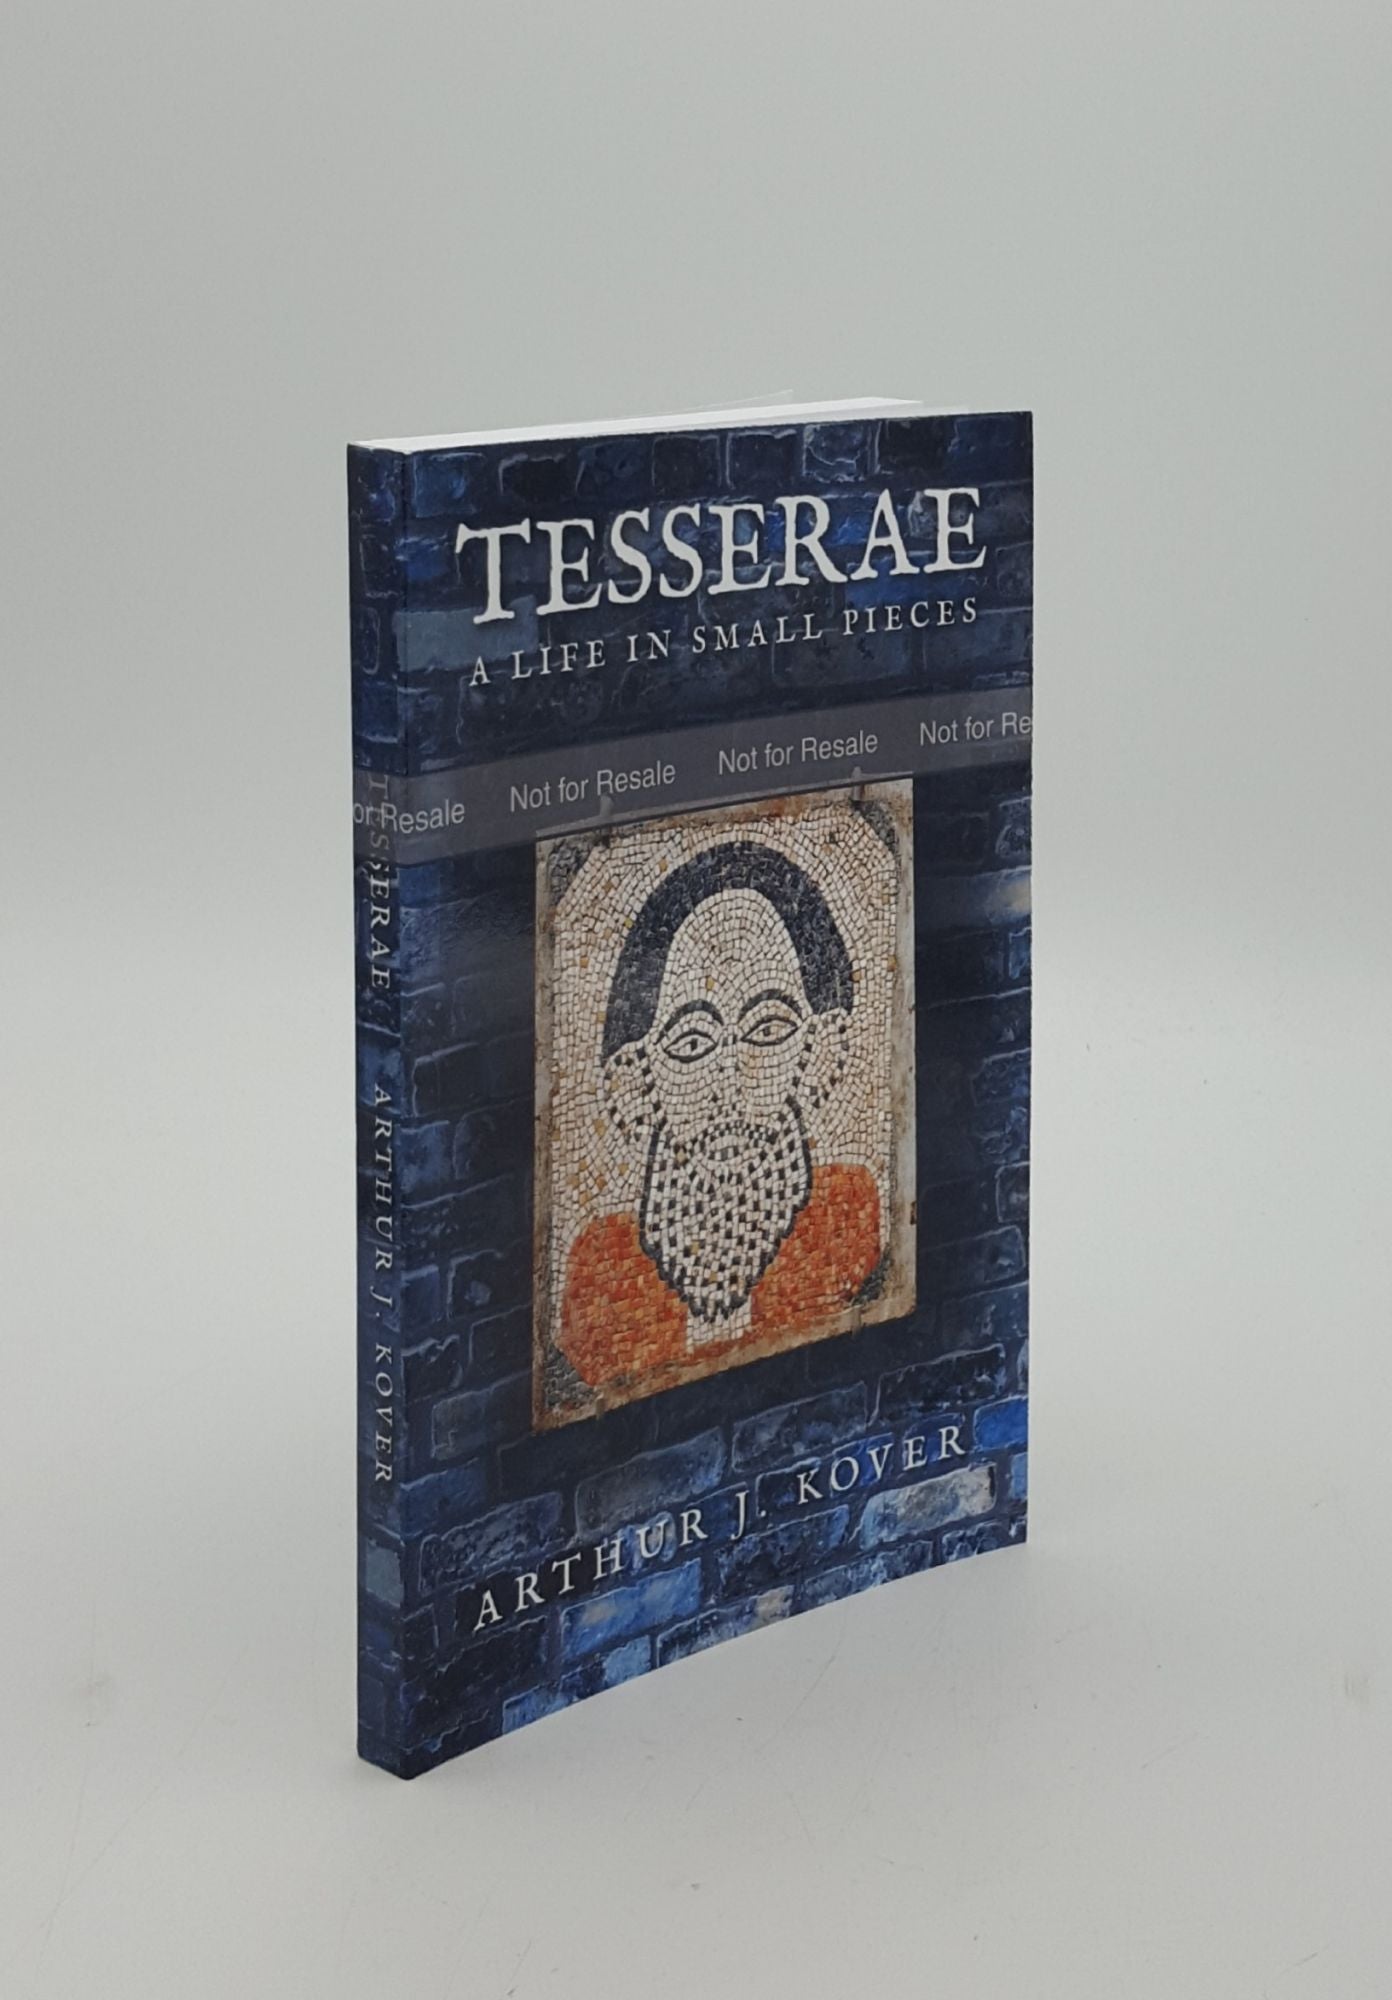 KOVER Arthur J. - Tesserae a Life in Small Pieces